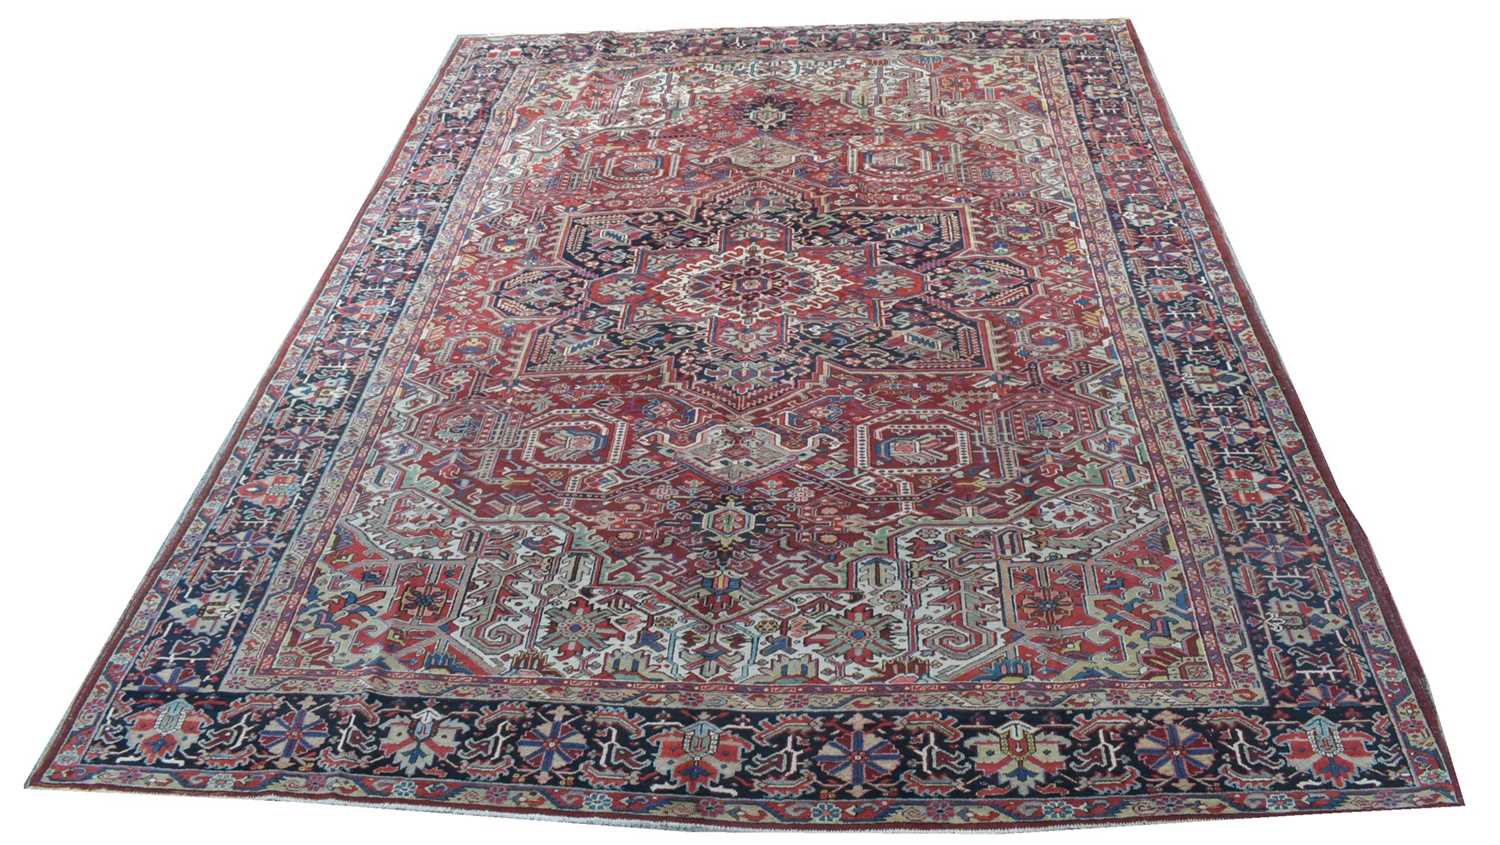 868 - Heriz carpet